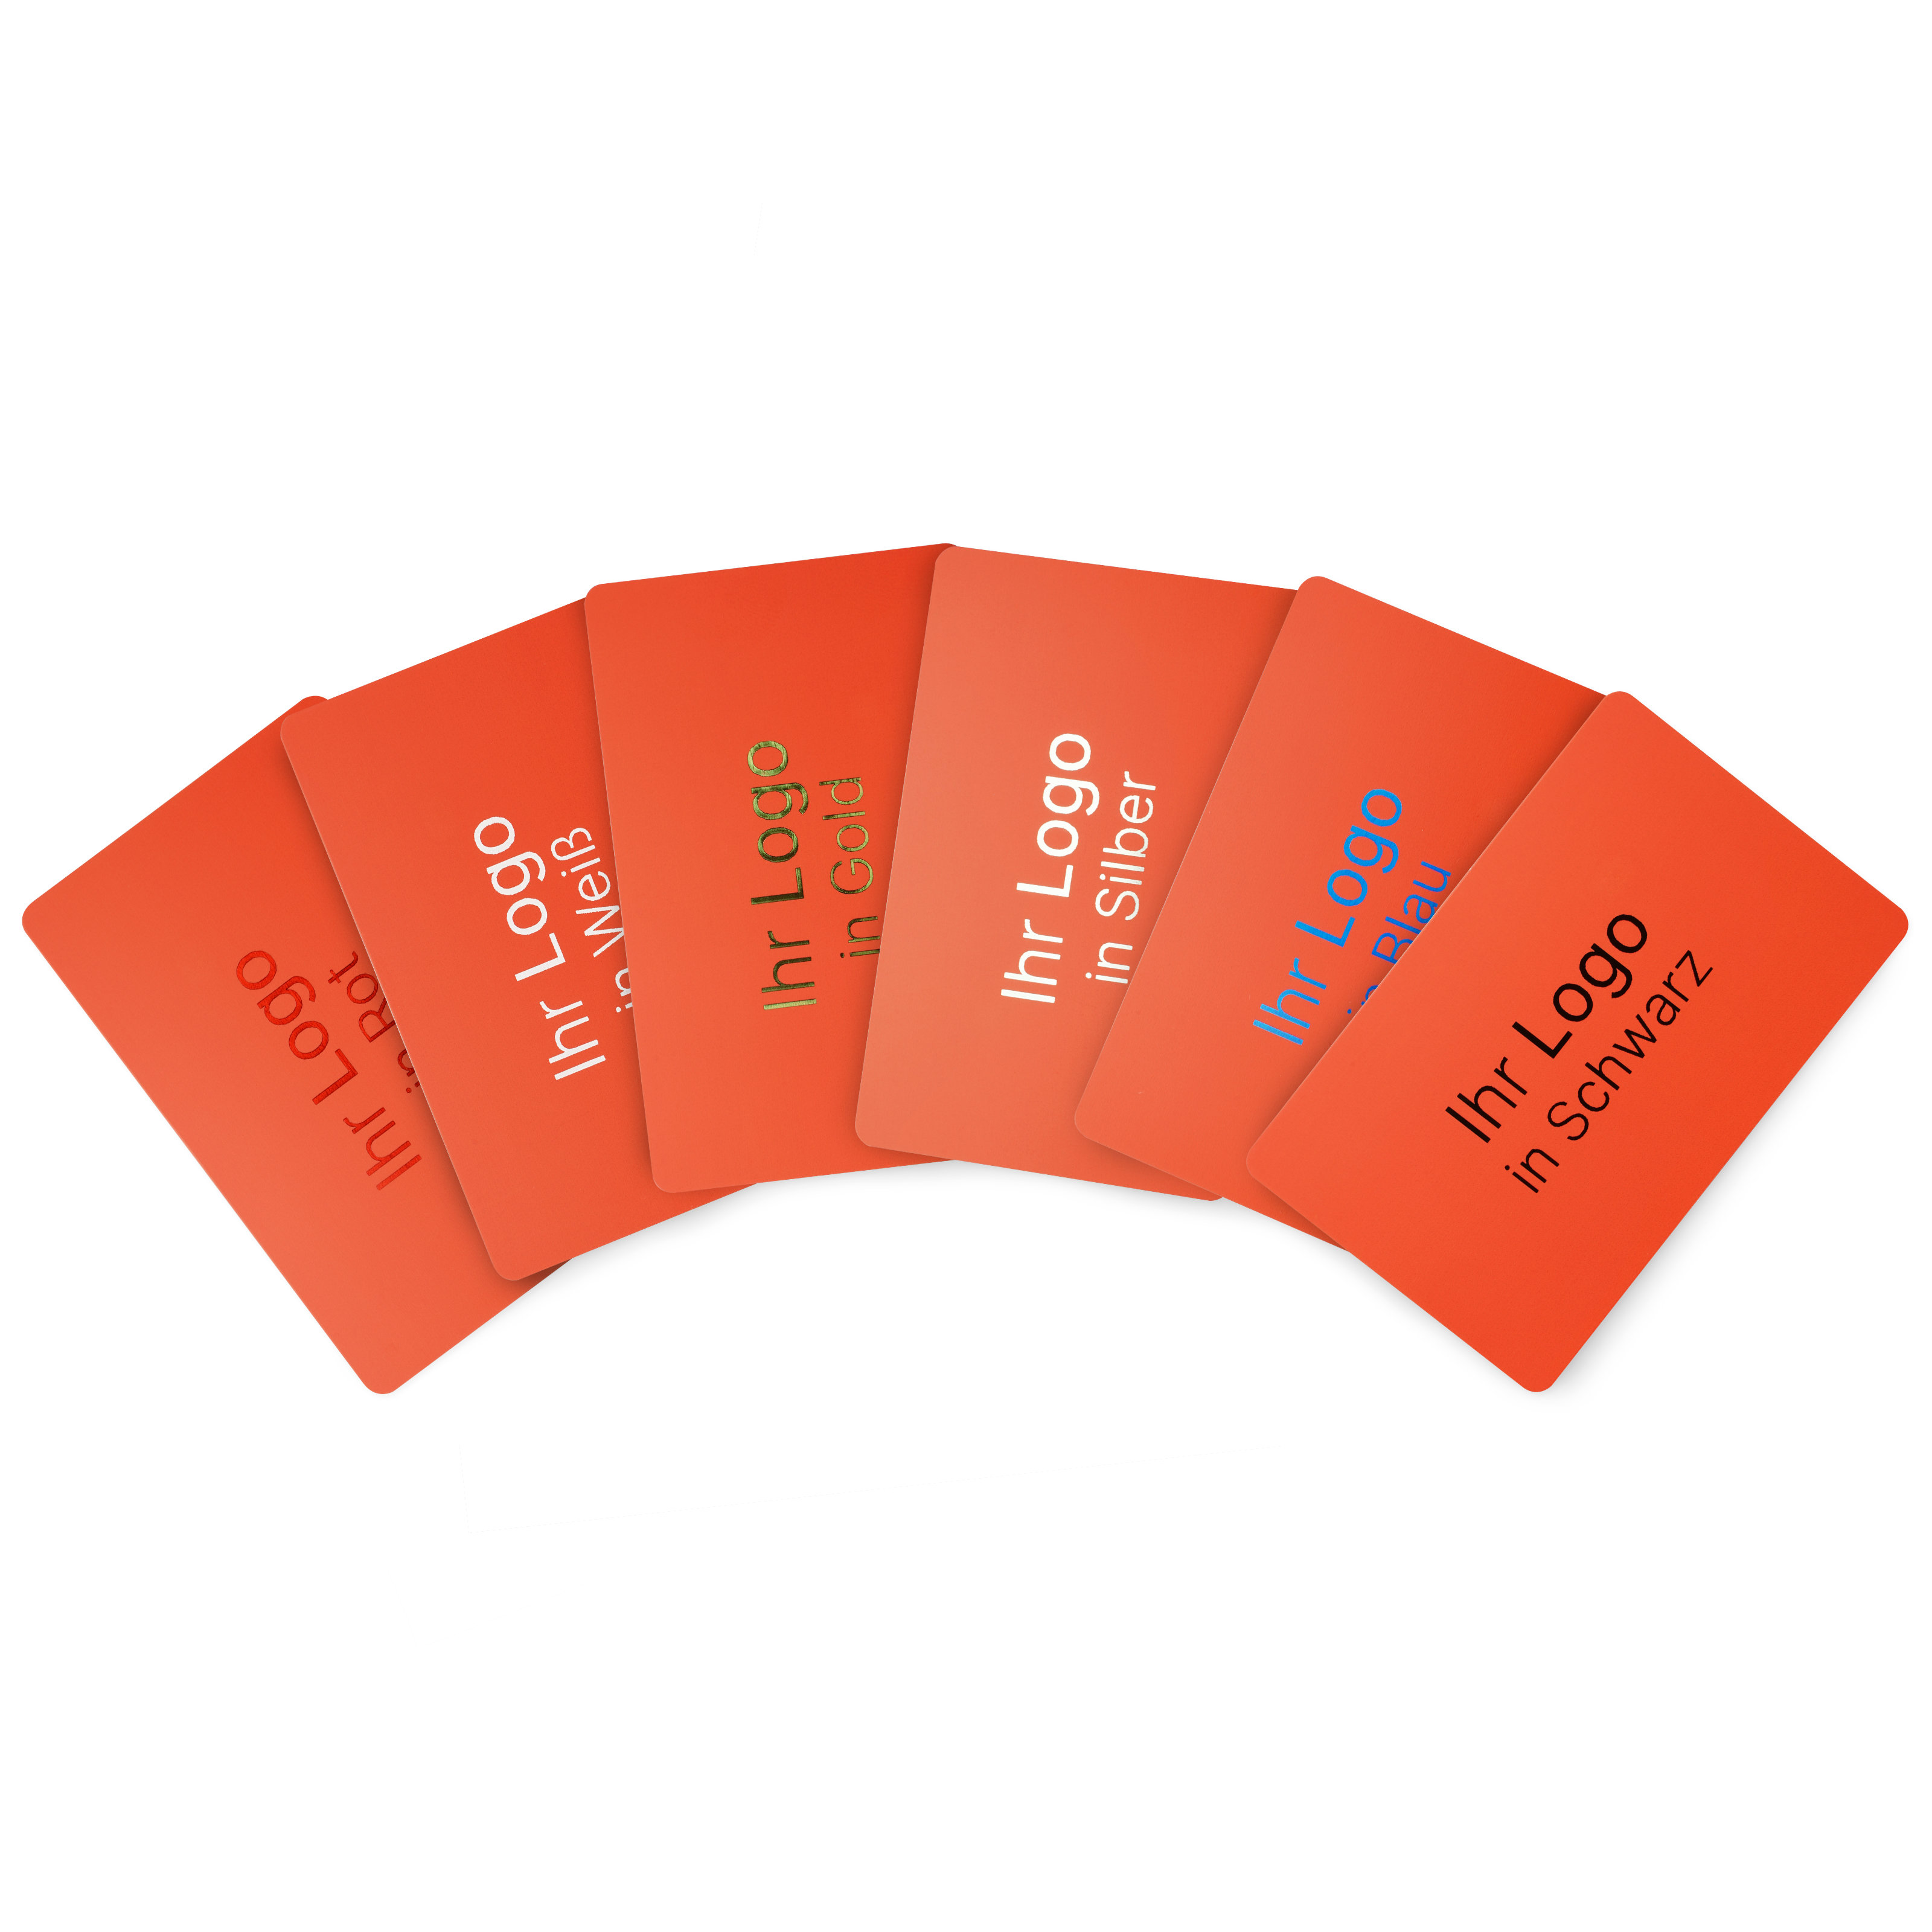 Gruppenbild von roten NFC Karten mit den verschiedenen Druckfarben